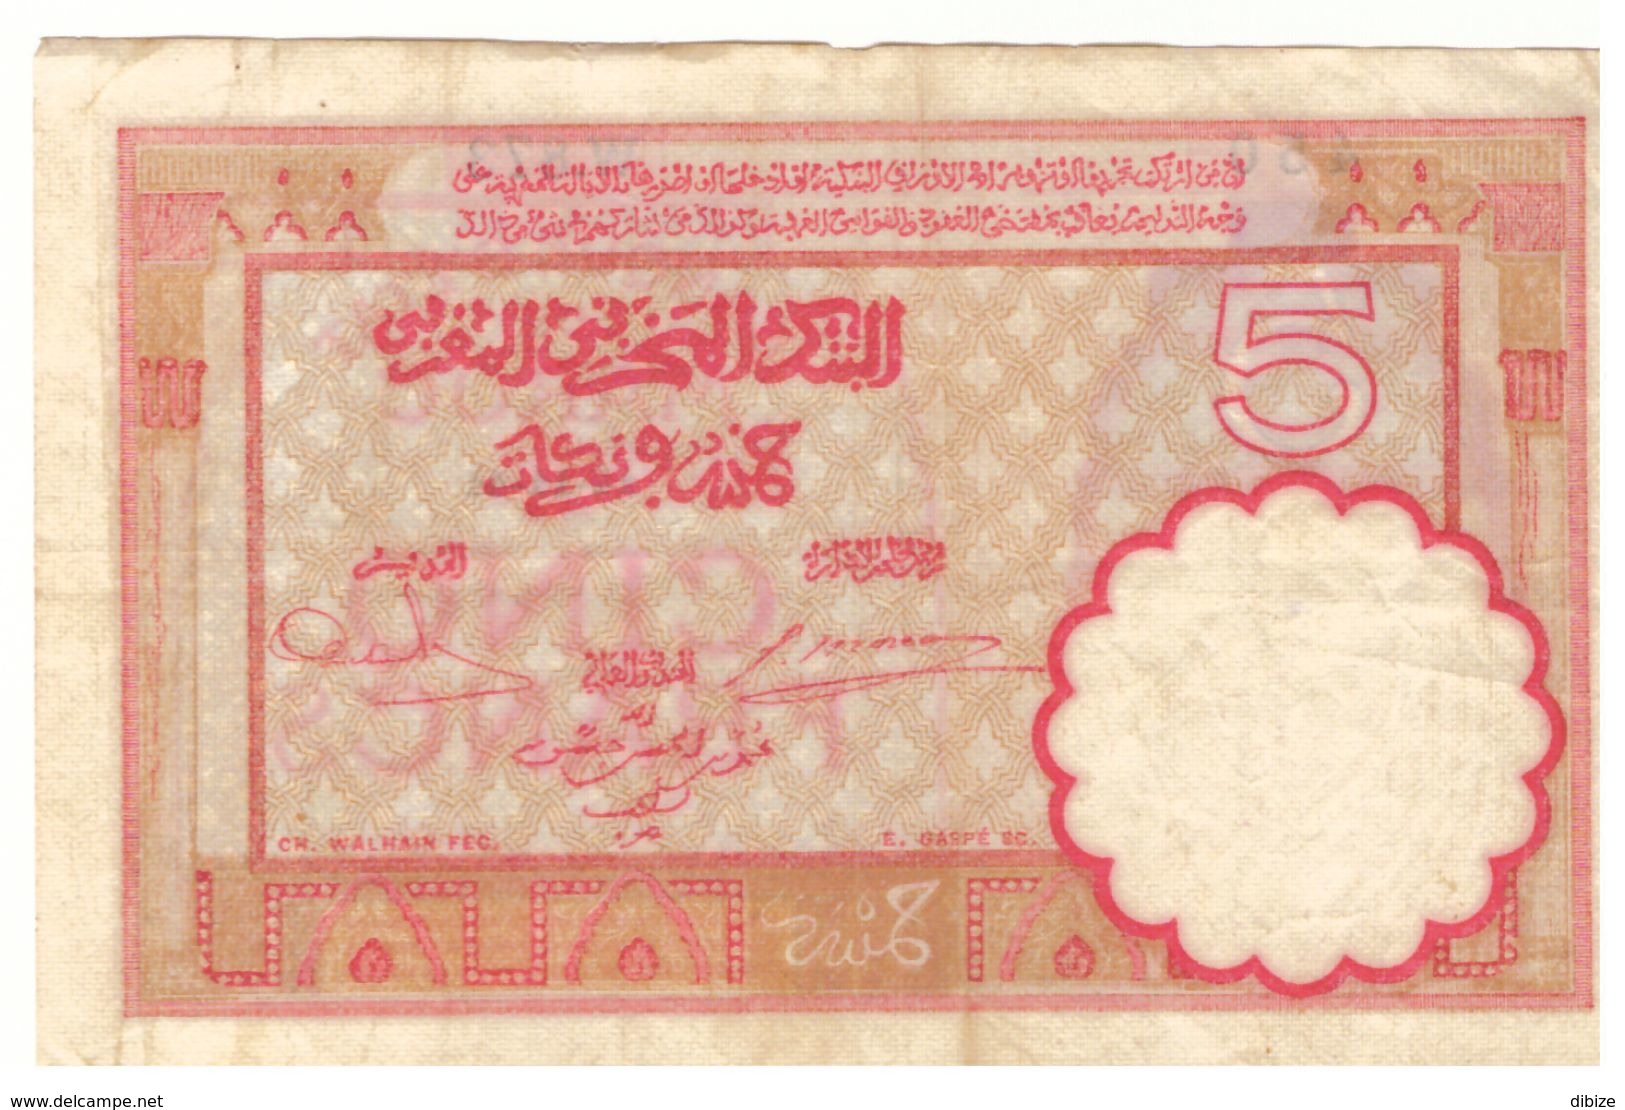 Maroc Billet De 5 Francs De 1941 (14-11-1941). Etat Moyen. Port 4 Euros En Recommandé. - Marokko